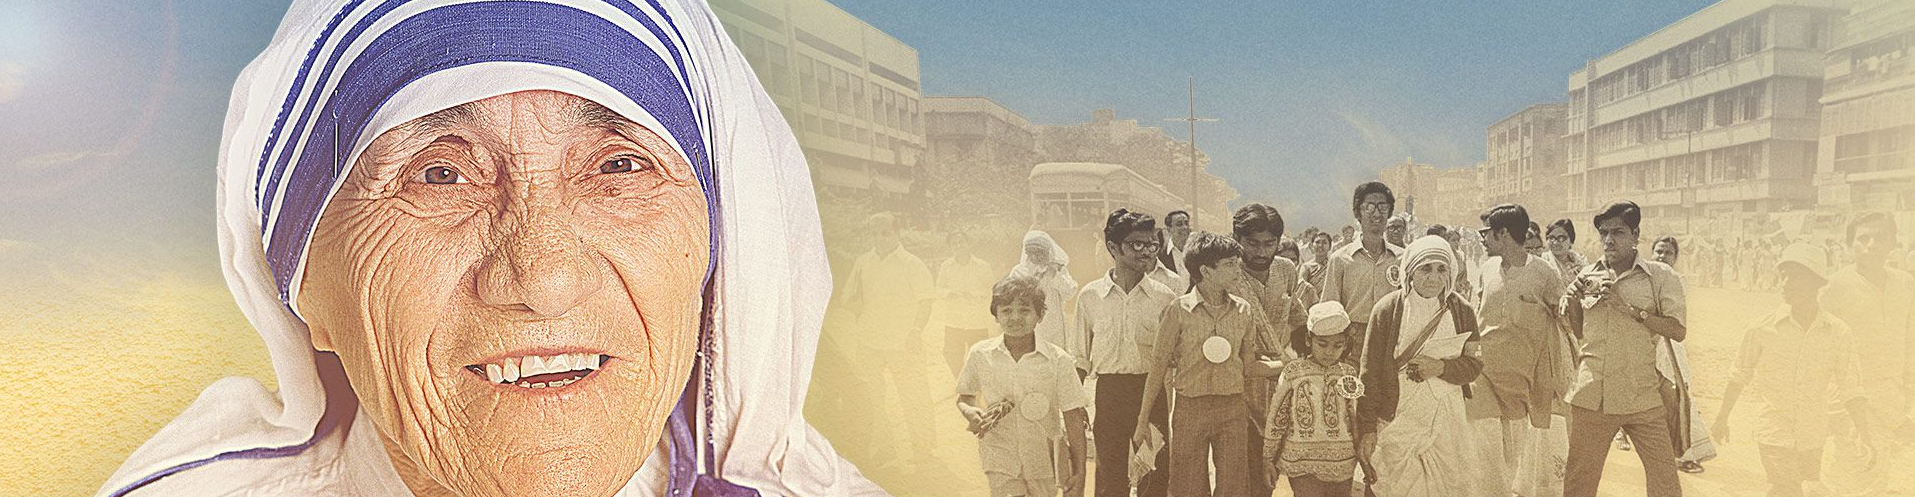 Mother Teresa Film Banner